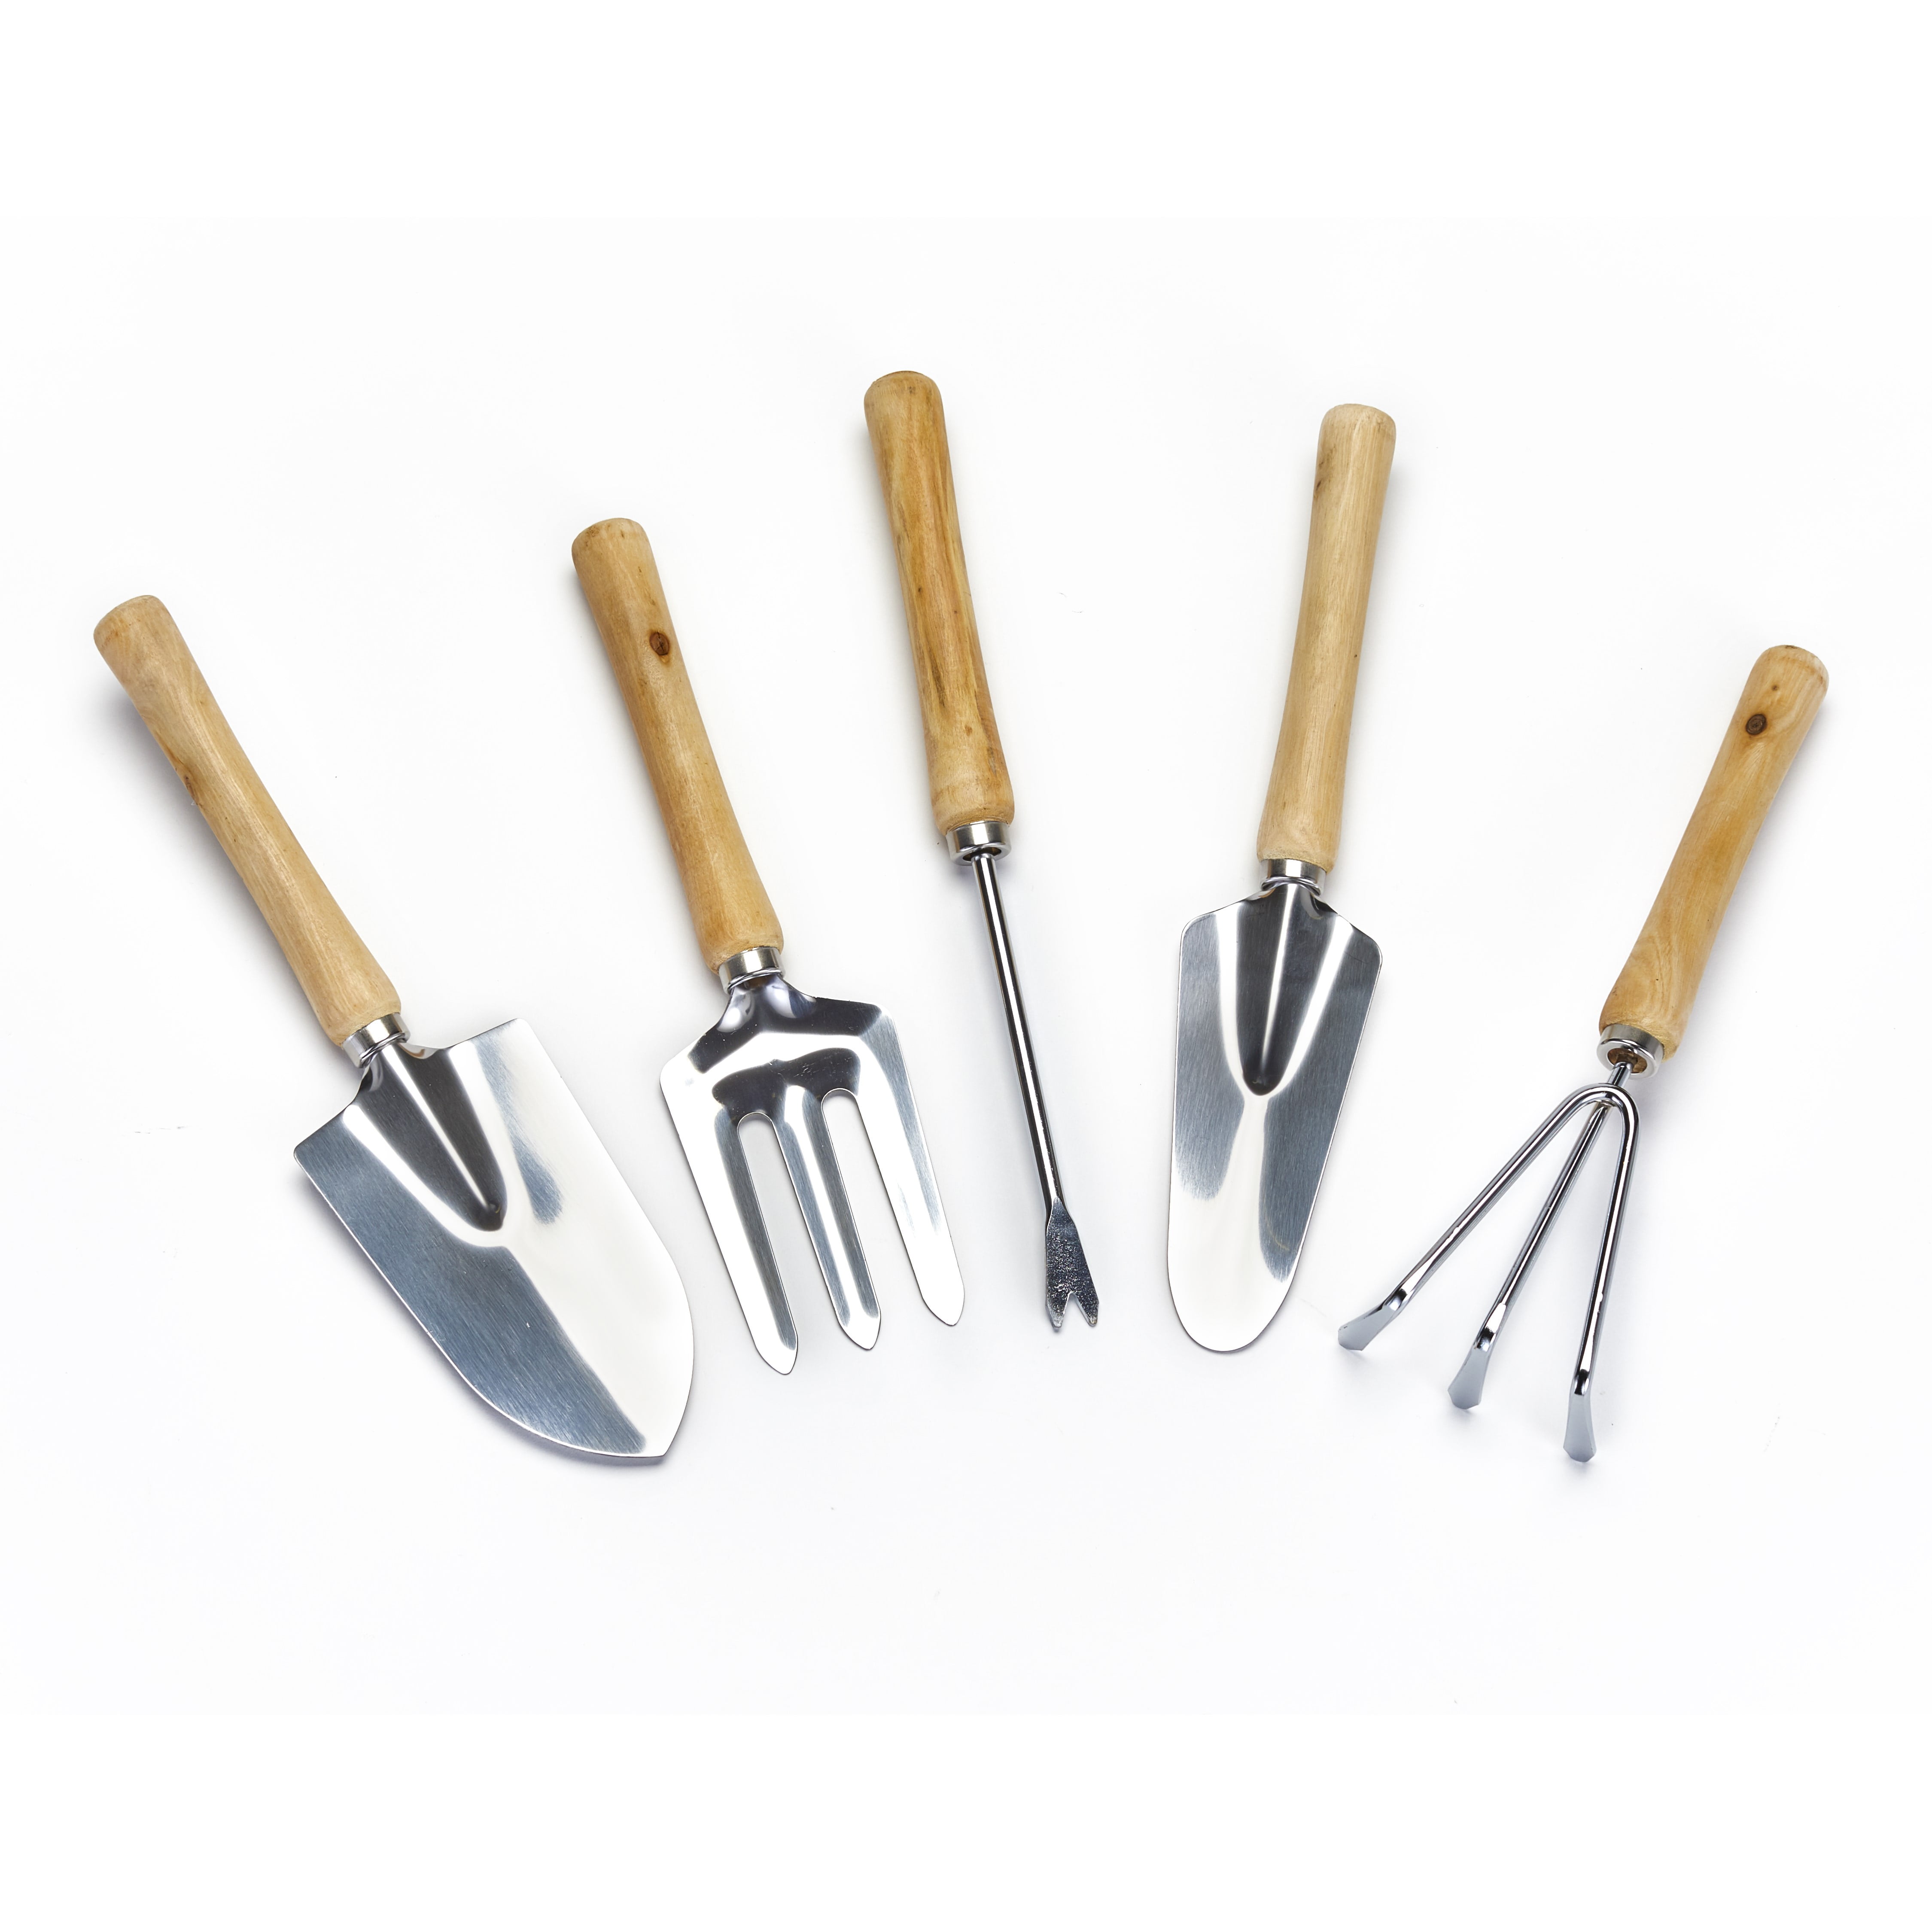 Narrow Trowel Cultivator Fork Weeder Set of 5 Garden Utility Tools Trowel 